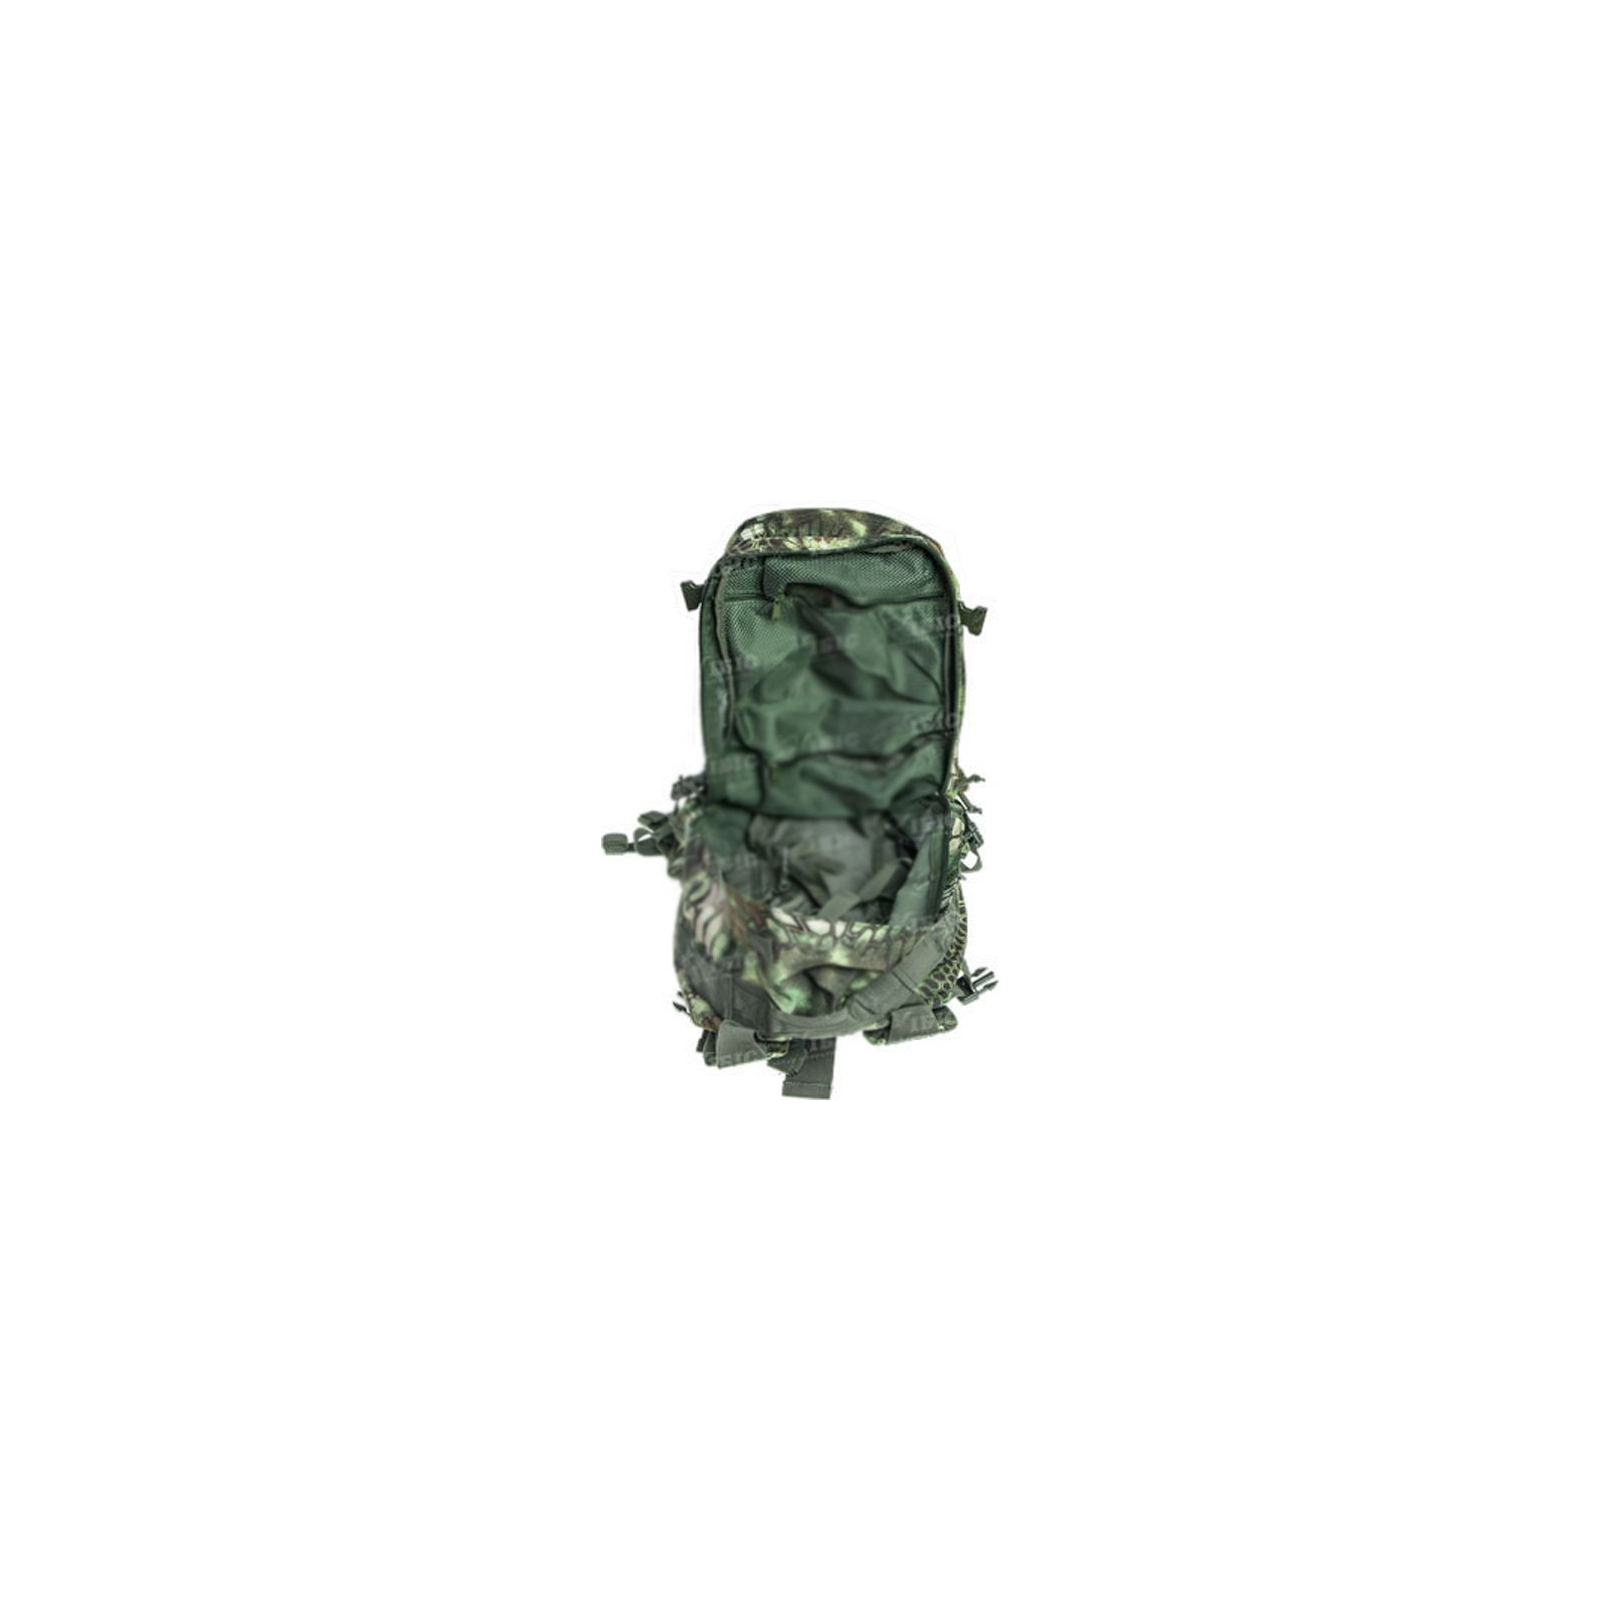 Рюкзак туристичний Skif Tac тактический 3-х дневный 45 литров kryptek green (2795.02.55) зображення 5